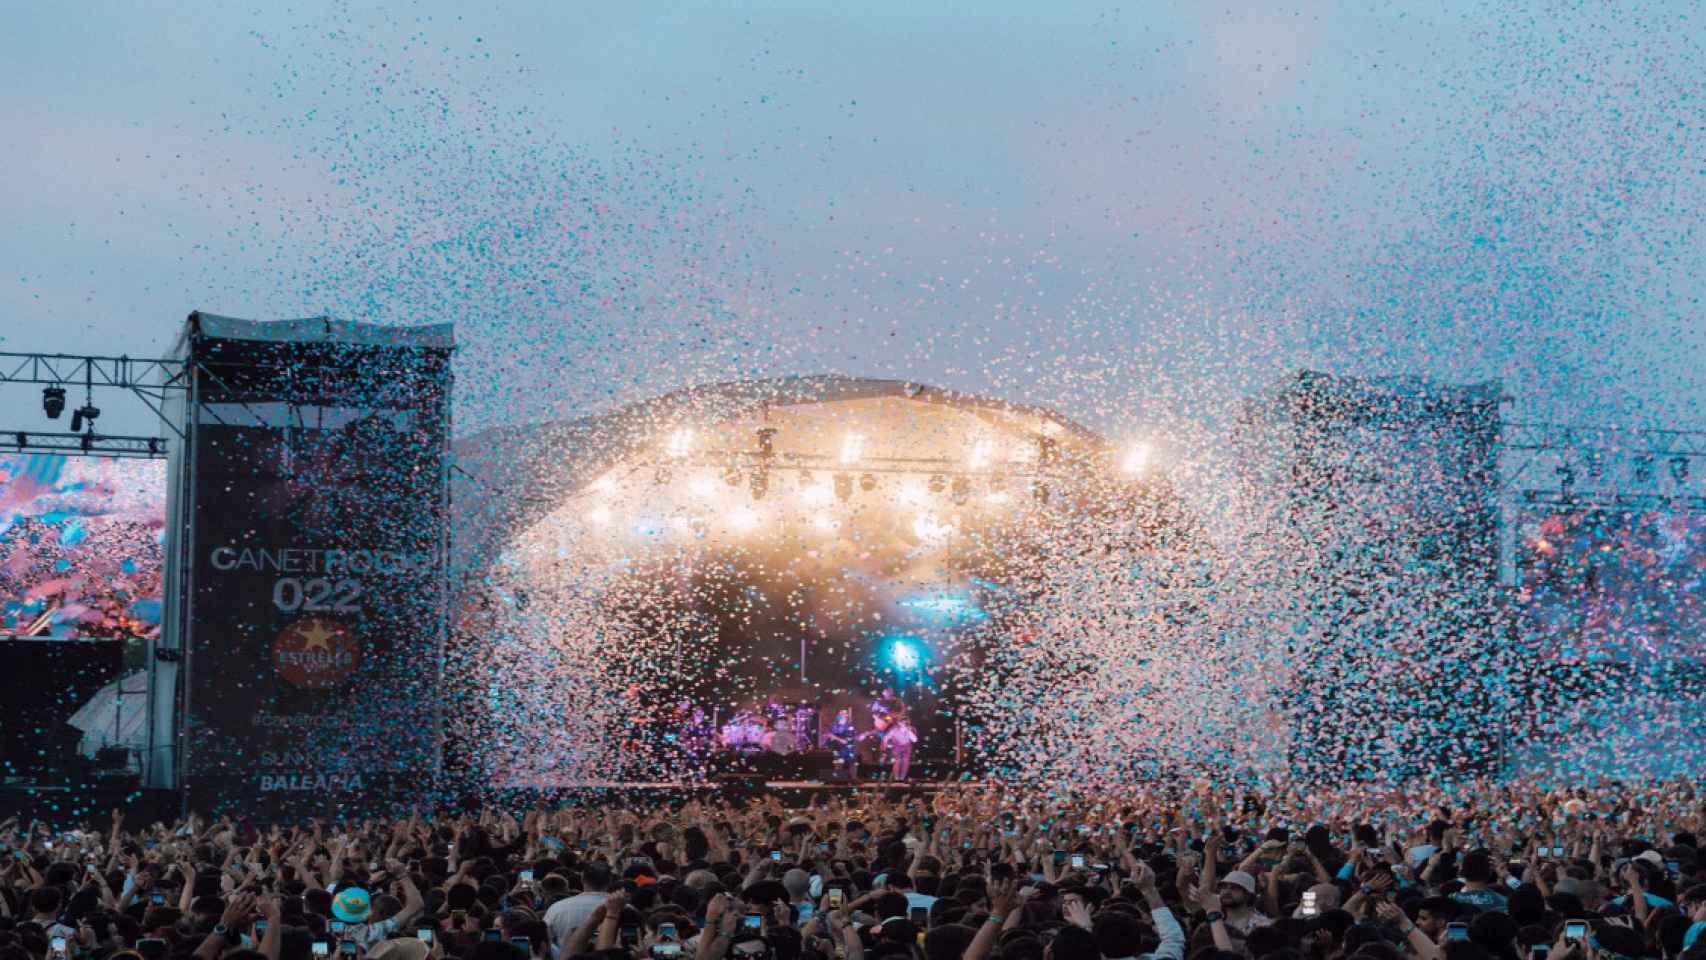 Una imagen del Festival Canet Rock, que ha reunido a 25.000 personas en su 8a edición / TWITTER